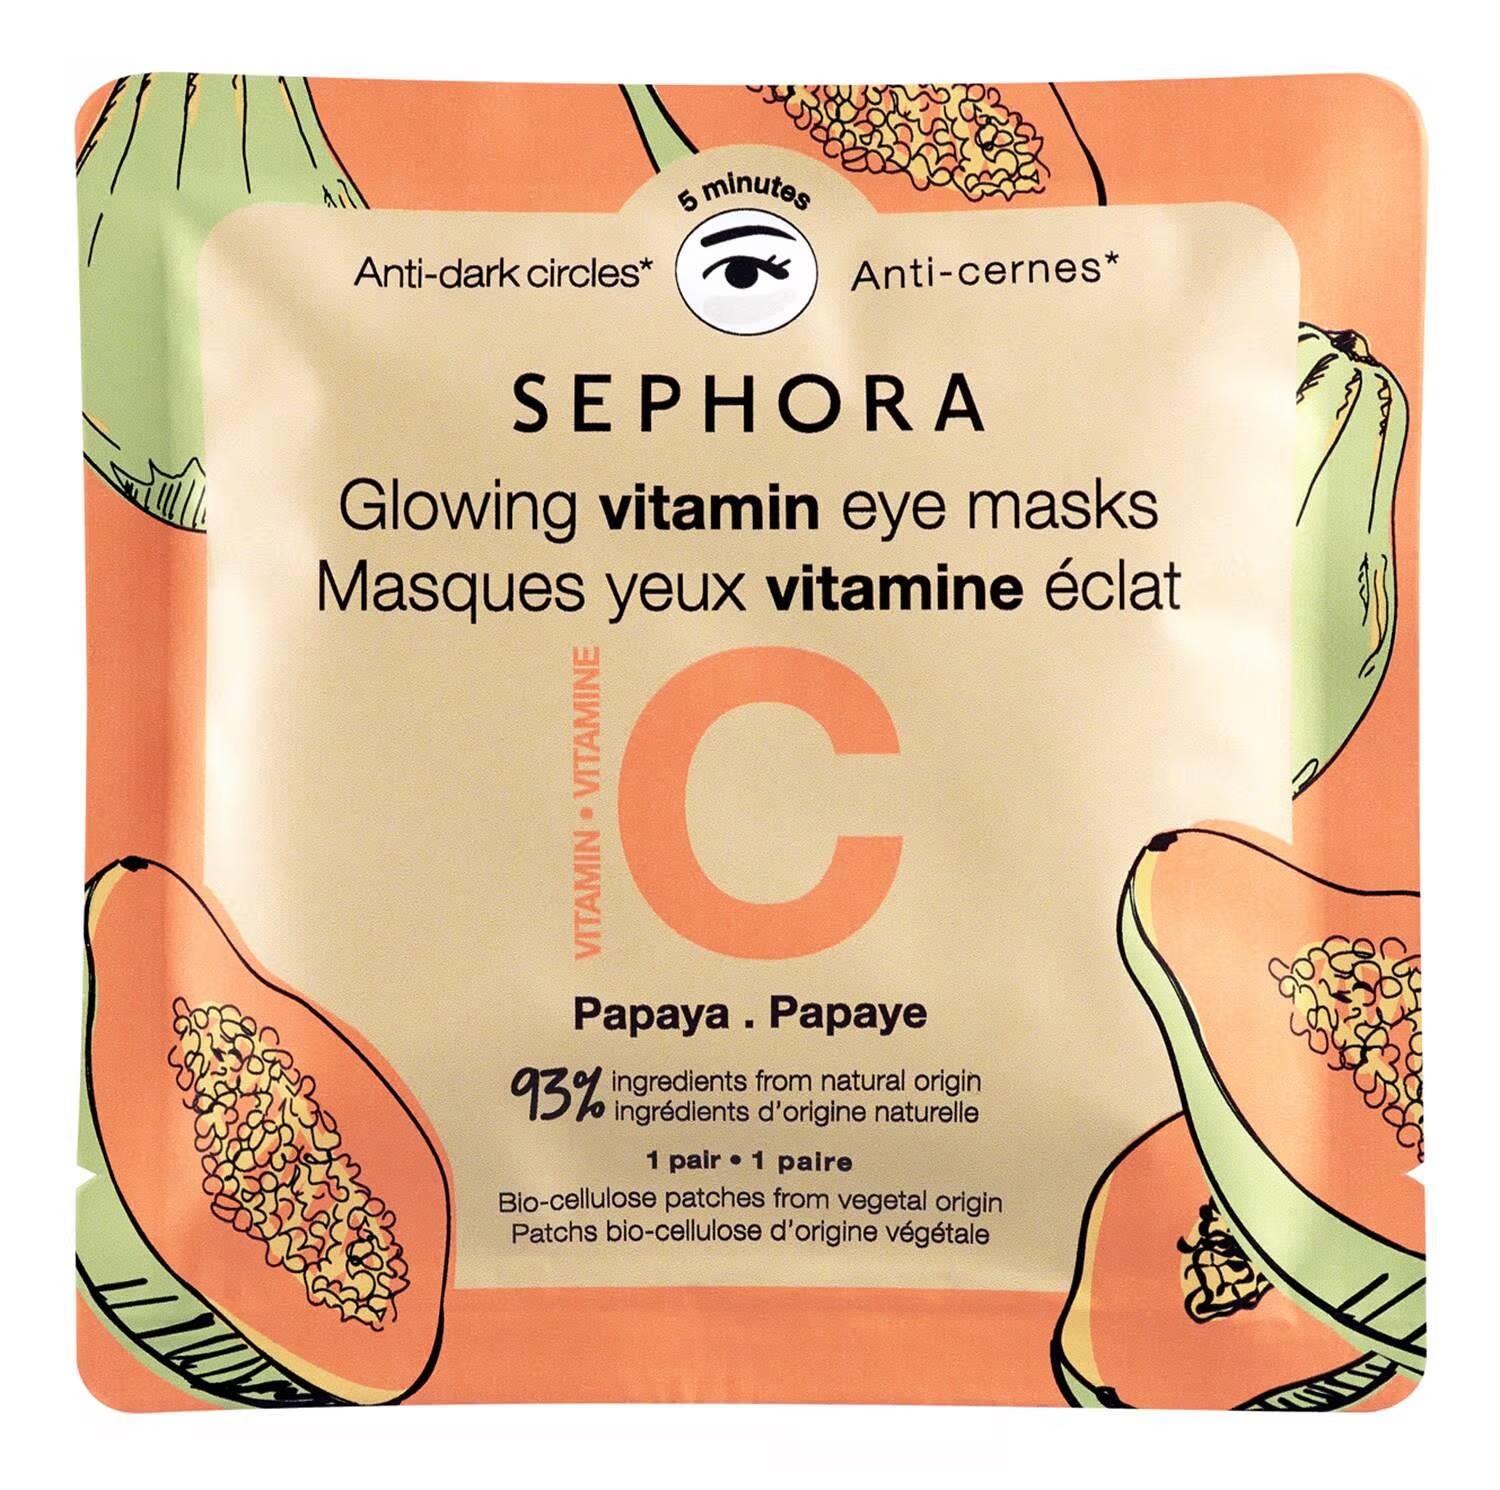 Die strahlenden Vitaminmasken von Sephora kosten 3,99 £